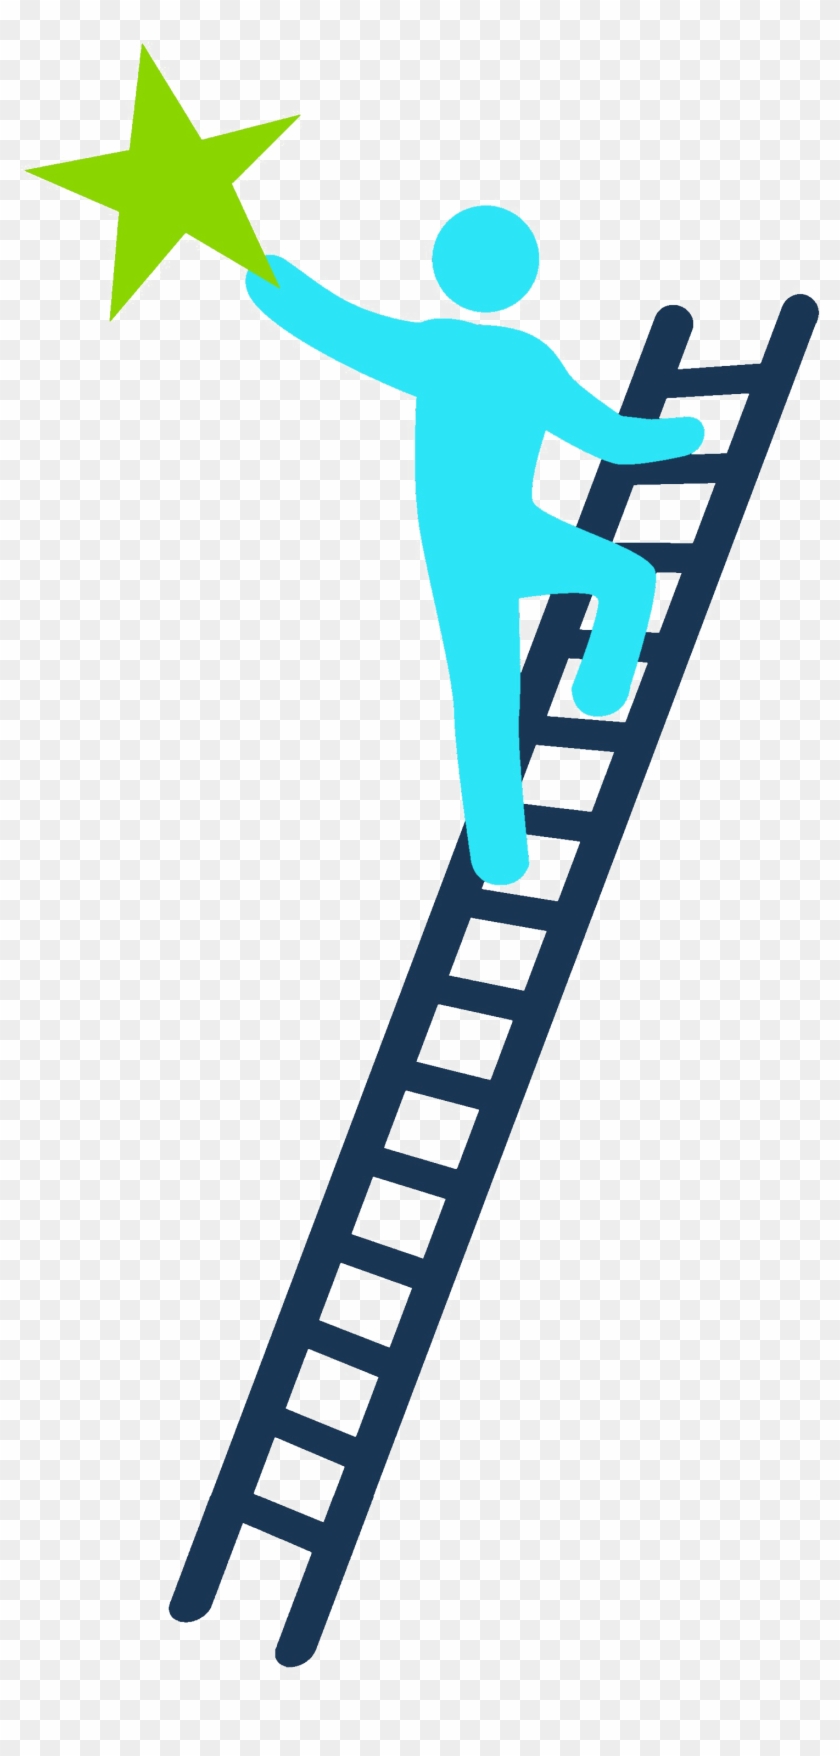 Success Clipart Ladder Success - Success Clipart Ladder Success #1539685